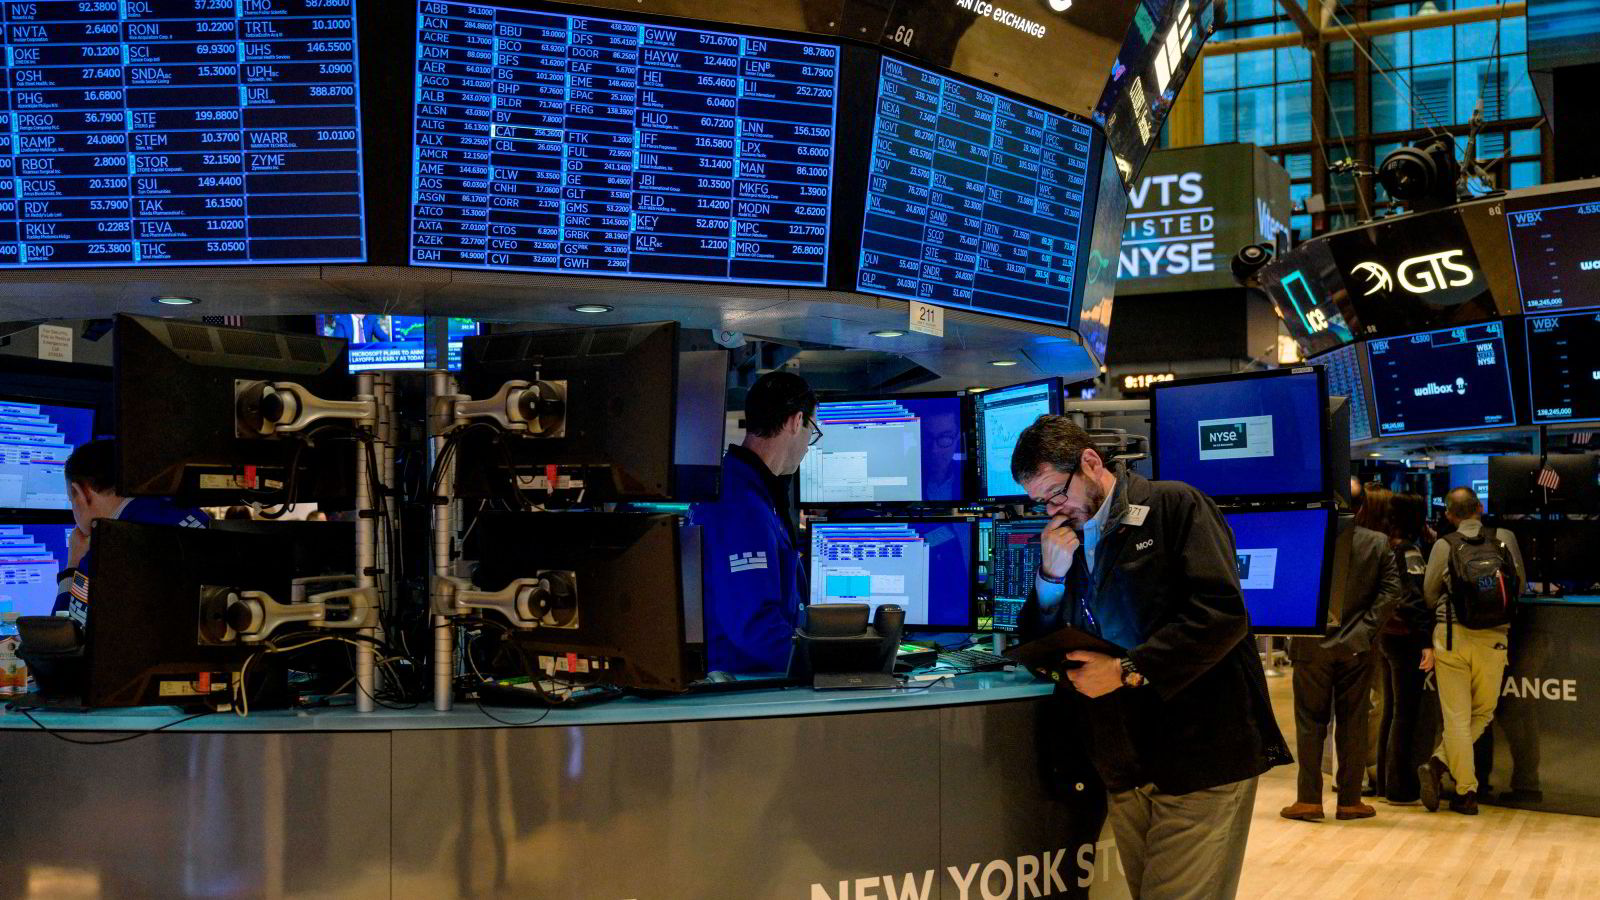 Tek-aksjer sender Wall Street opp – S&P 500 bryter 5000 poeng for første gang